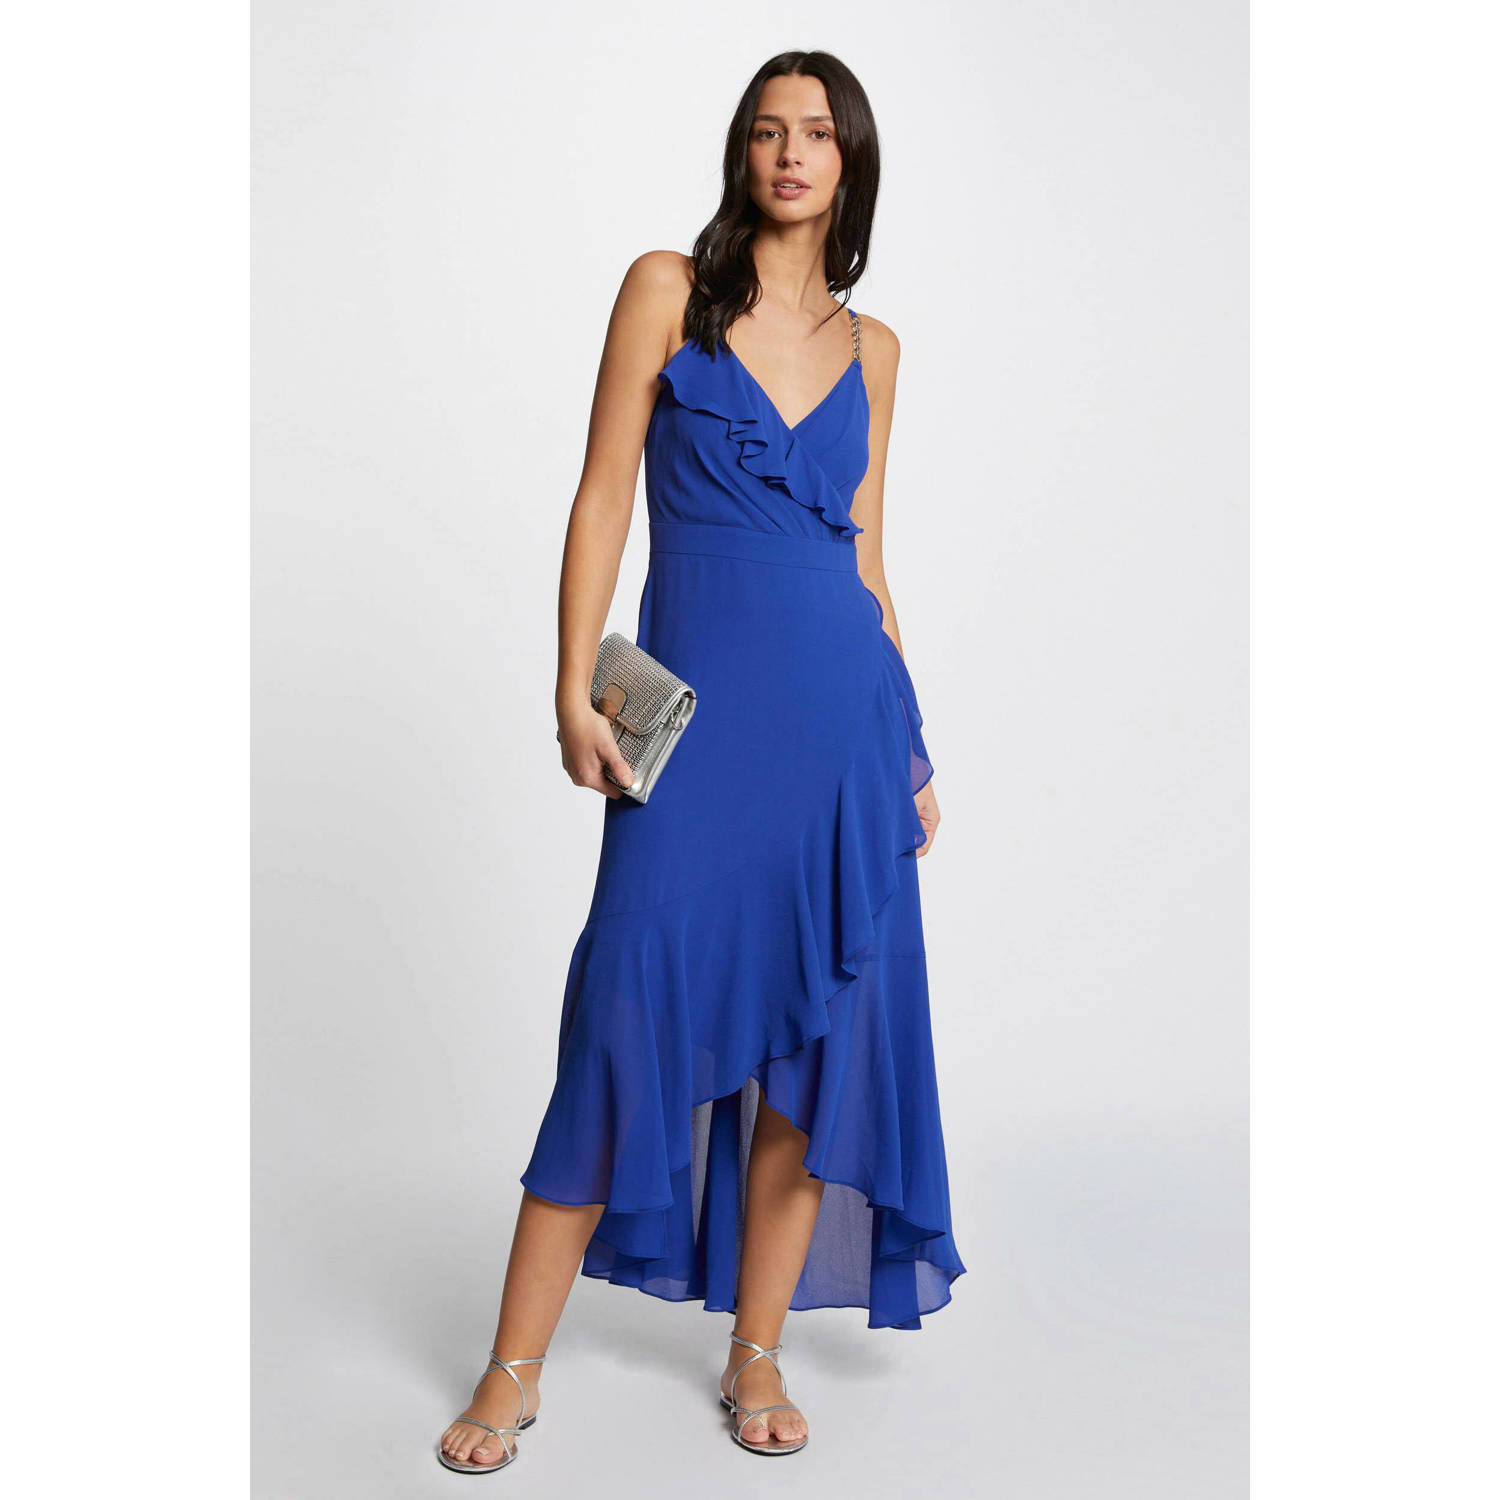 Morgan semi-transparante jurk blauw